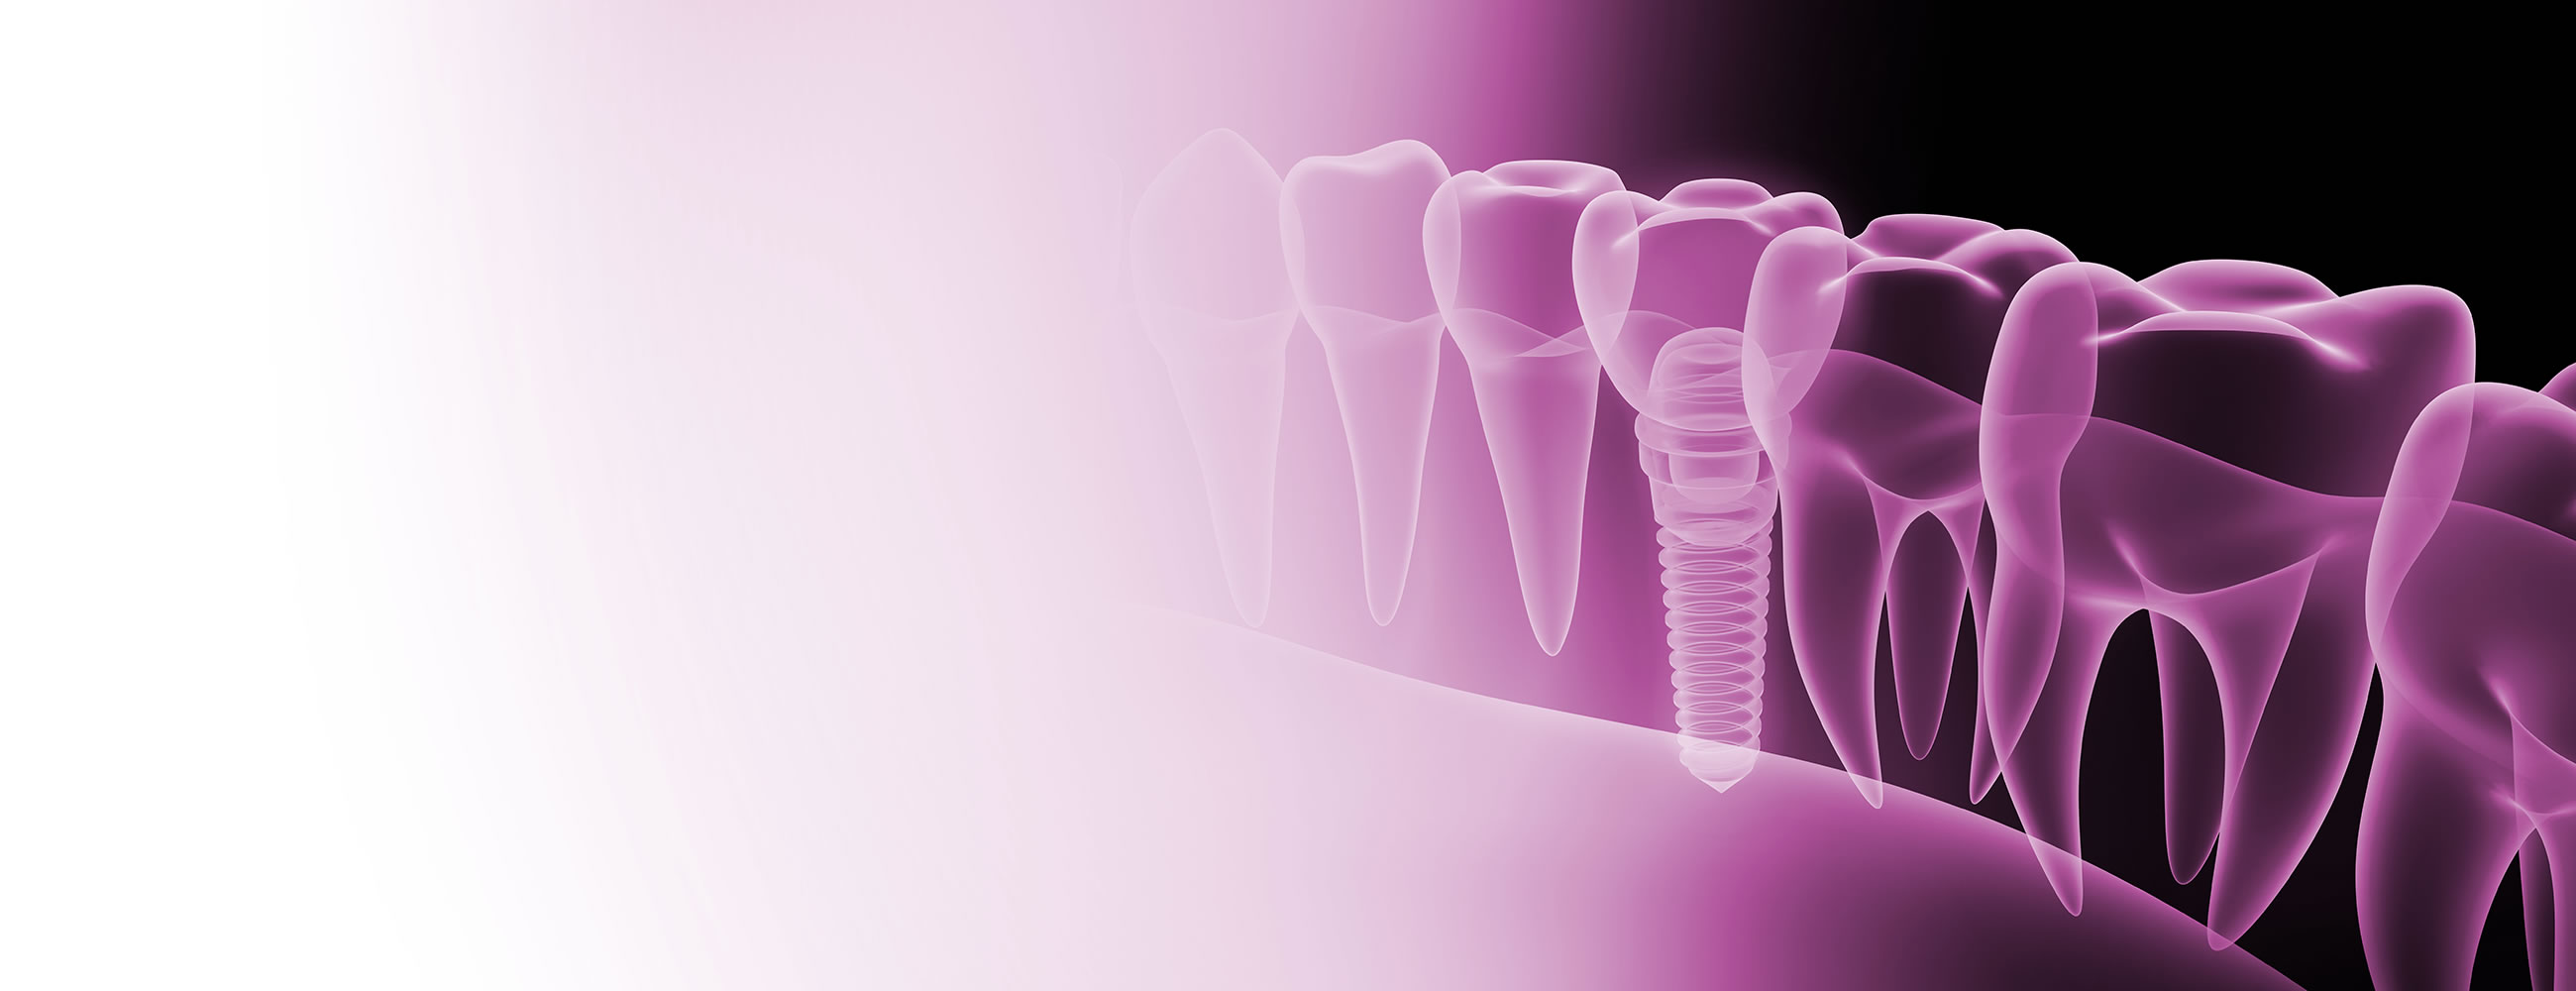 Dental Implant Referrals in Bracknell